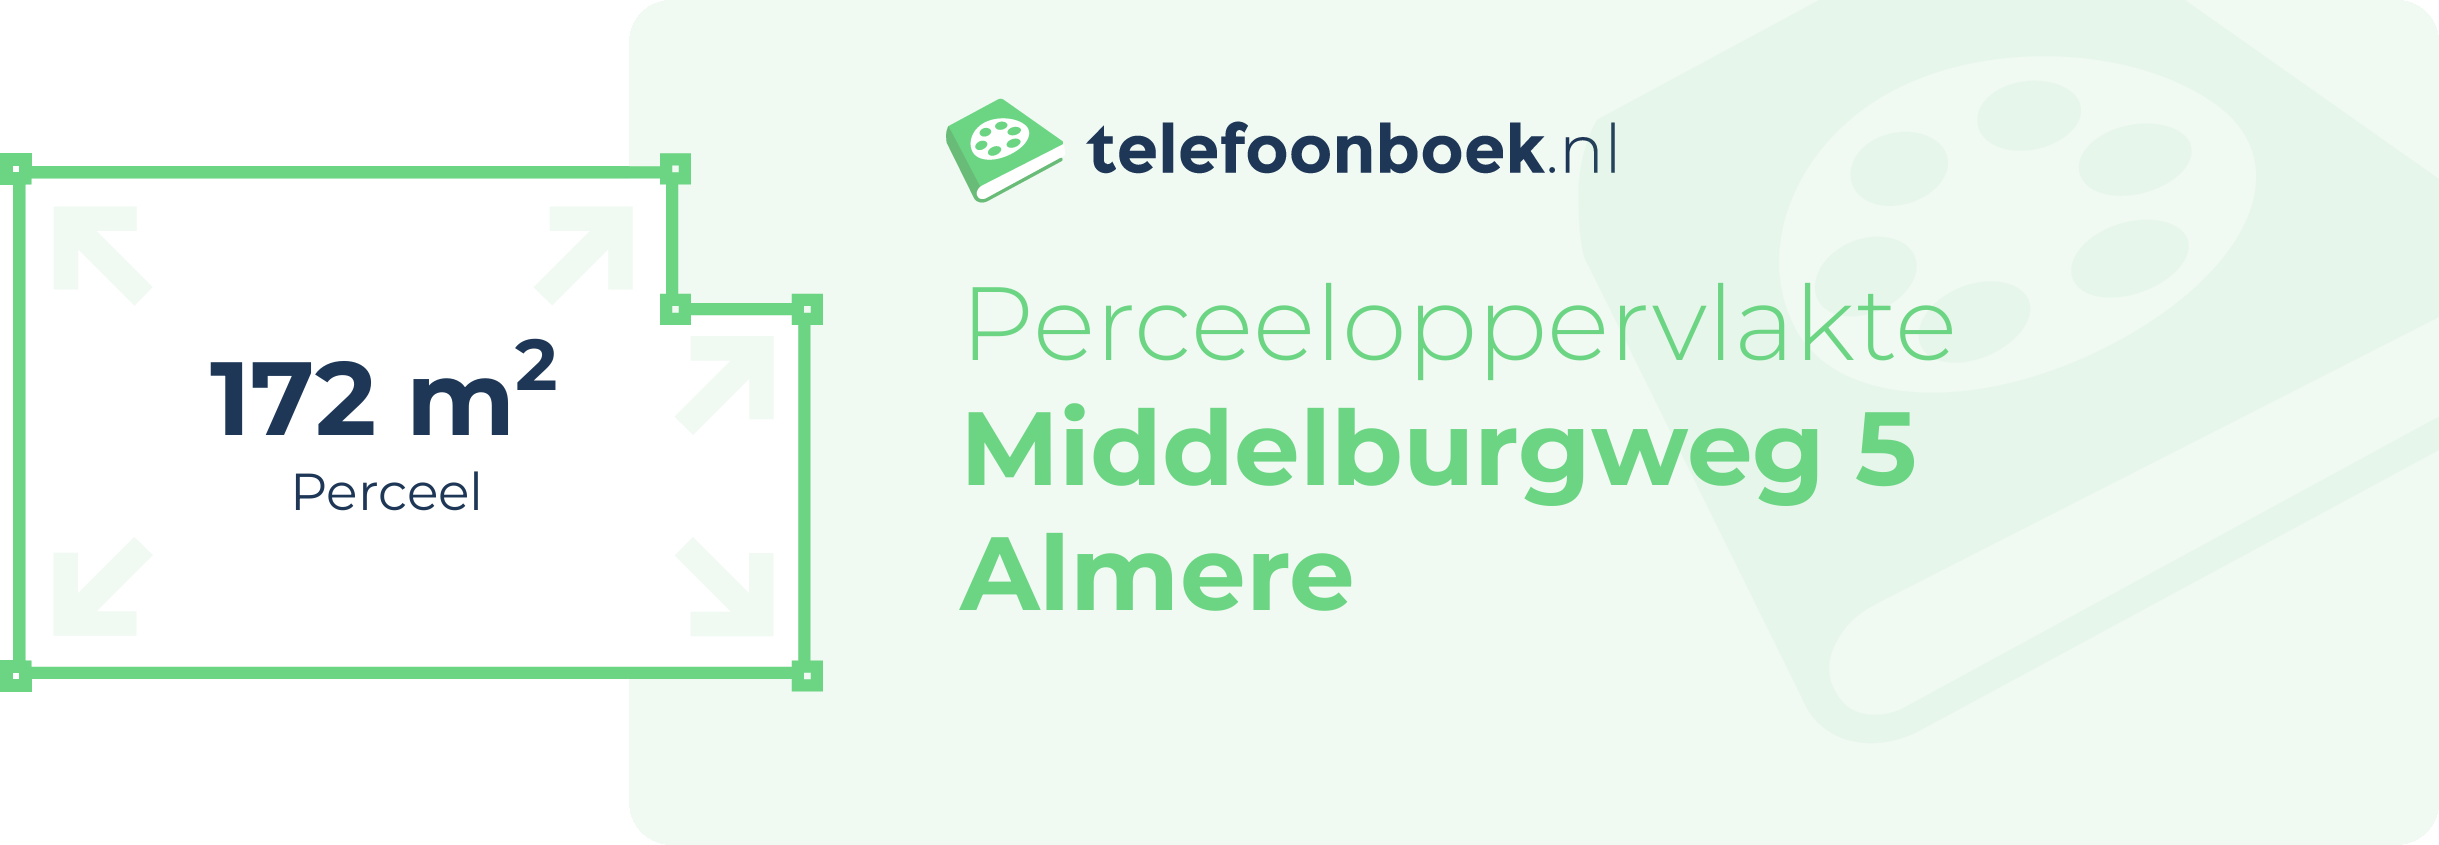 Perceeloppervlakte Middelburgweg 5 Almere